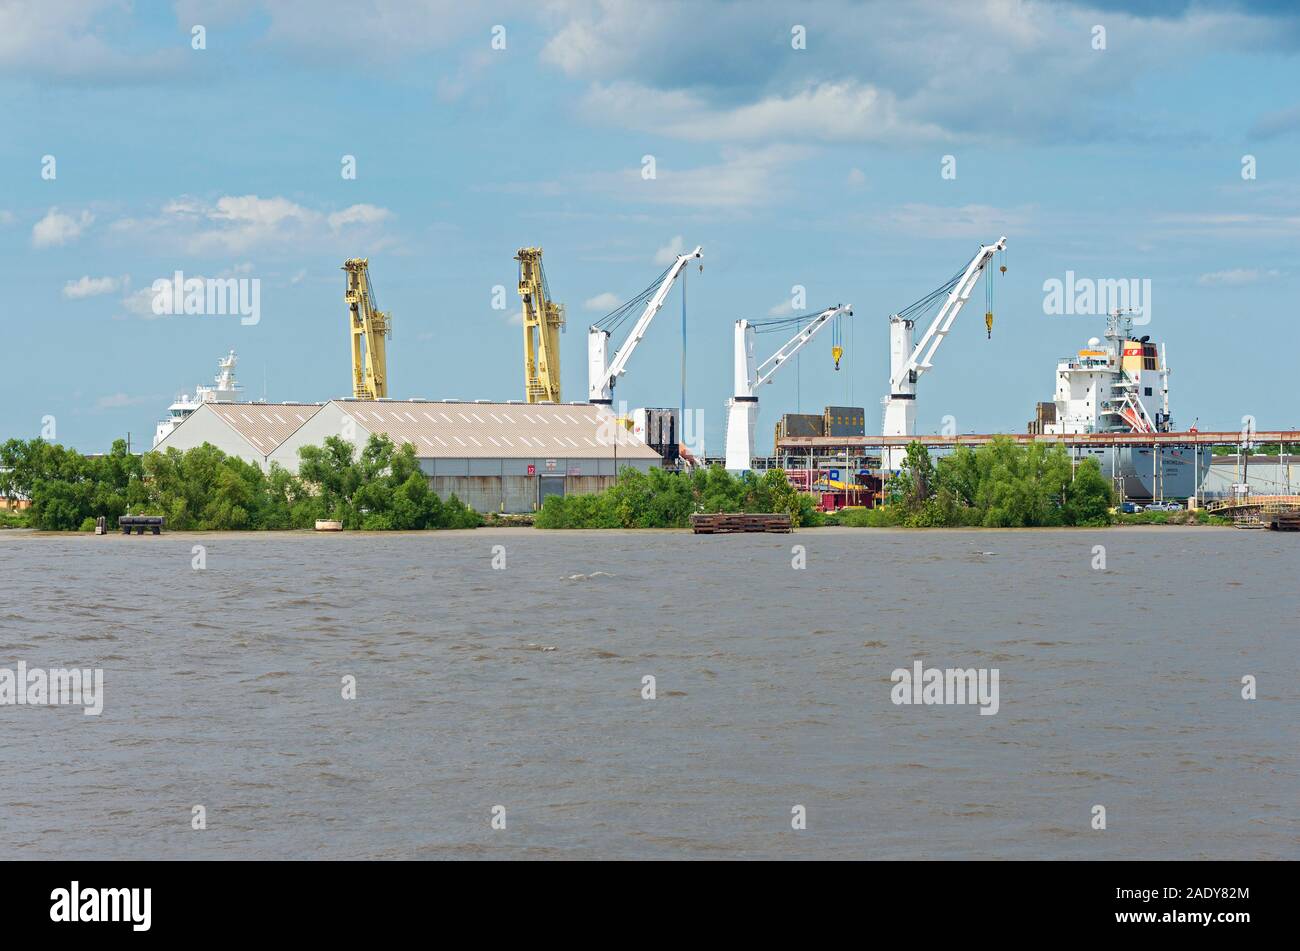 New Orleans, Louisiana/USA - 14. Juni 2019: Krane, Schiffe und Transportbehälter für das Laden von Containerschiffen am Mississippi River. Stockfoto